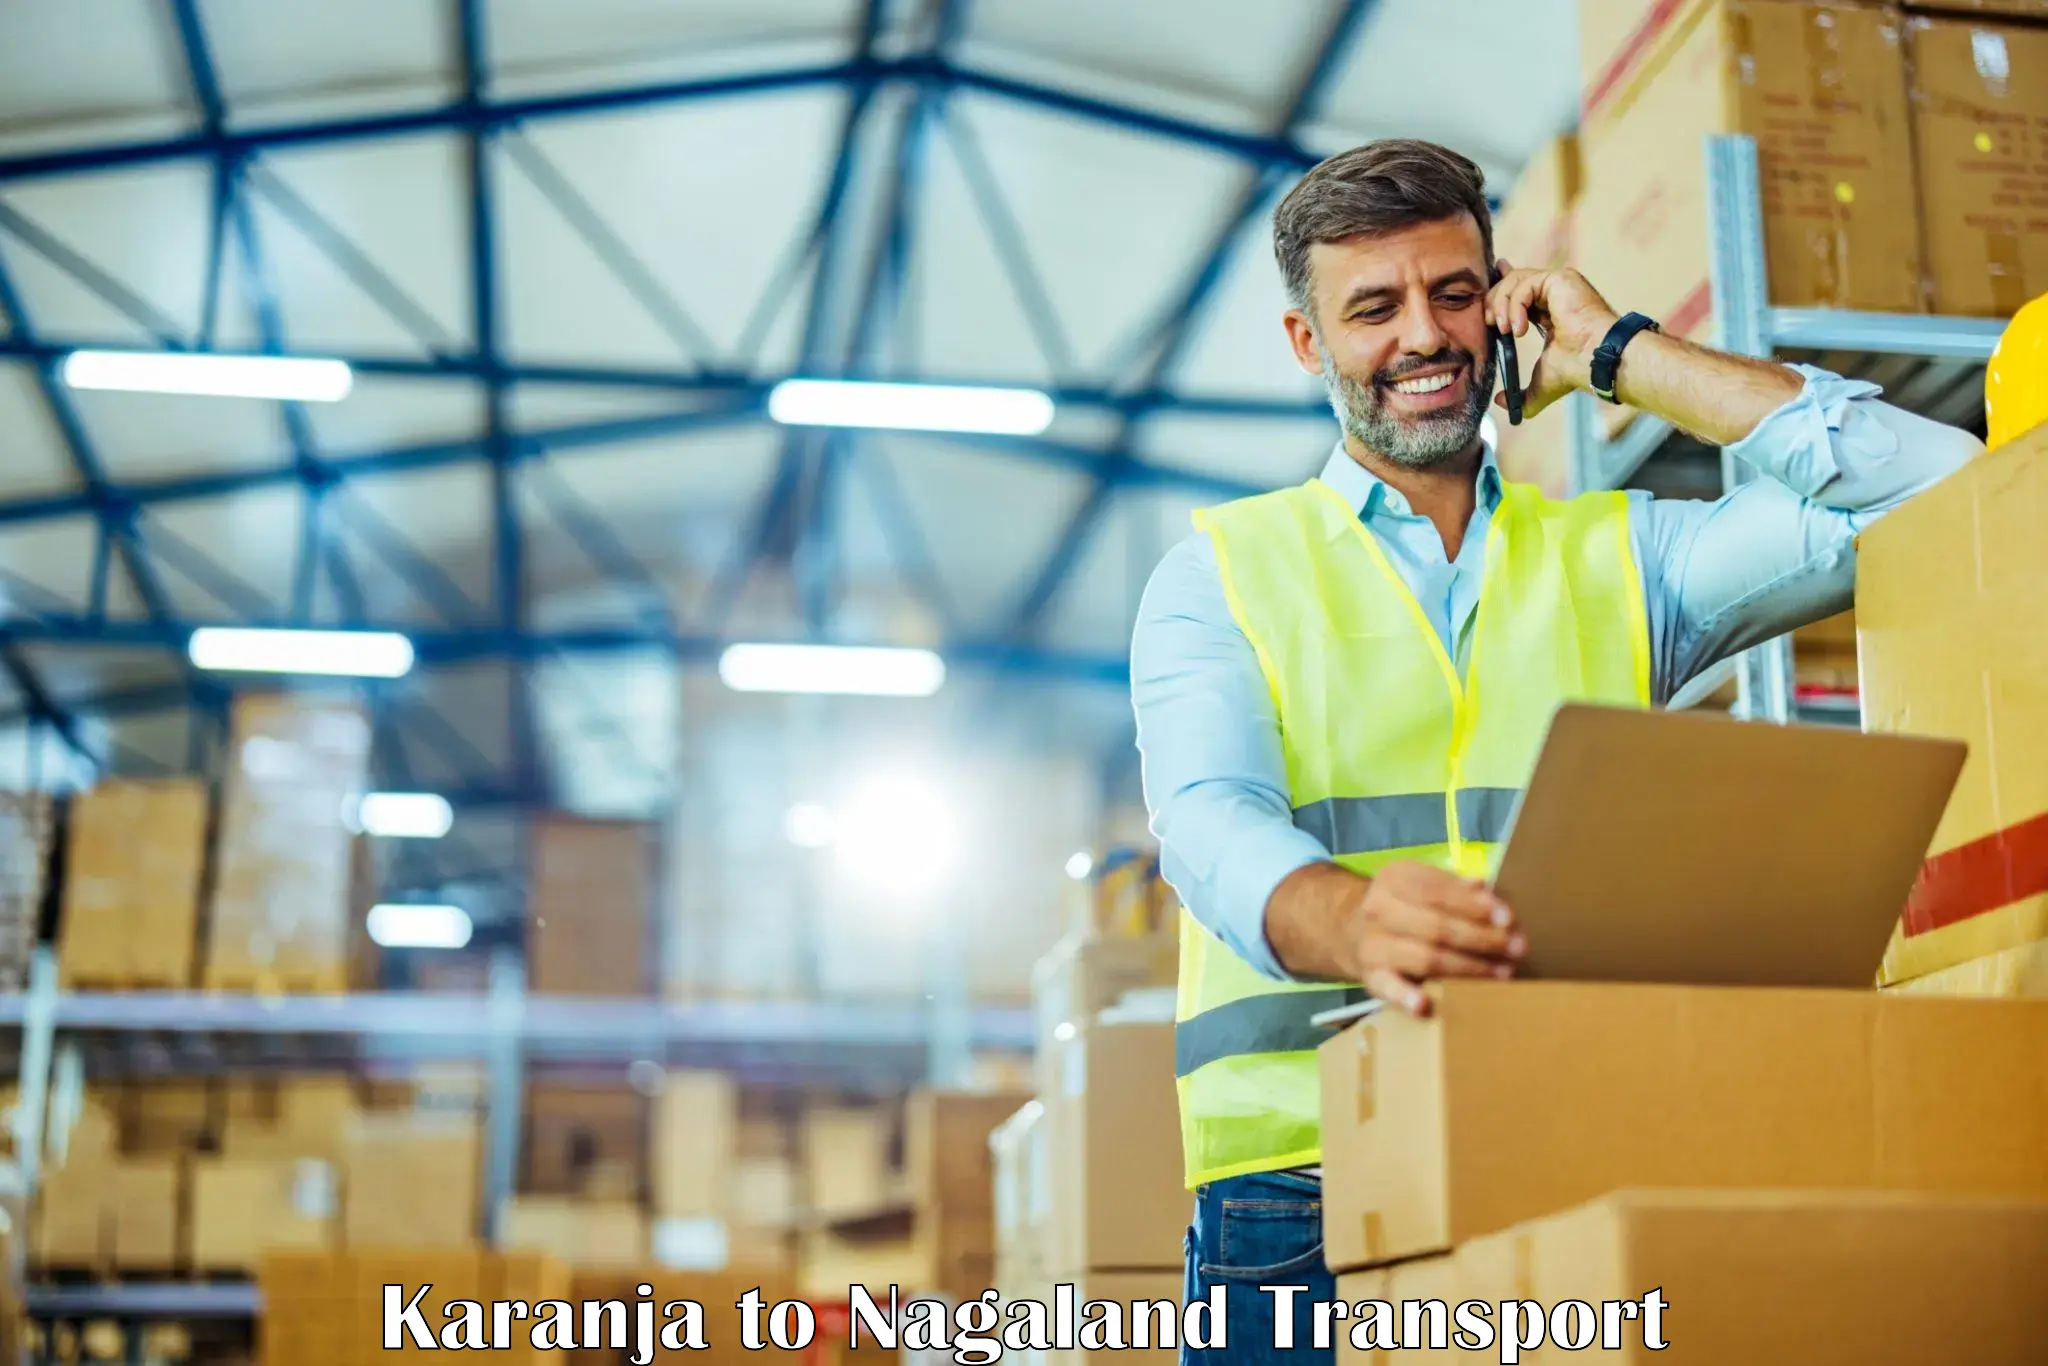 Pick up transport service Karanja to Nagaland